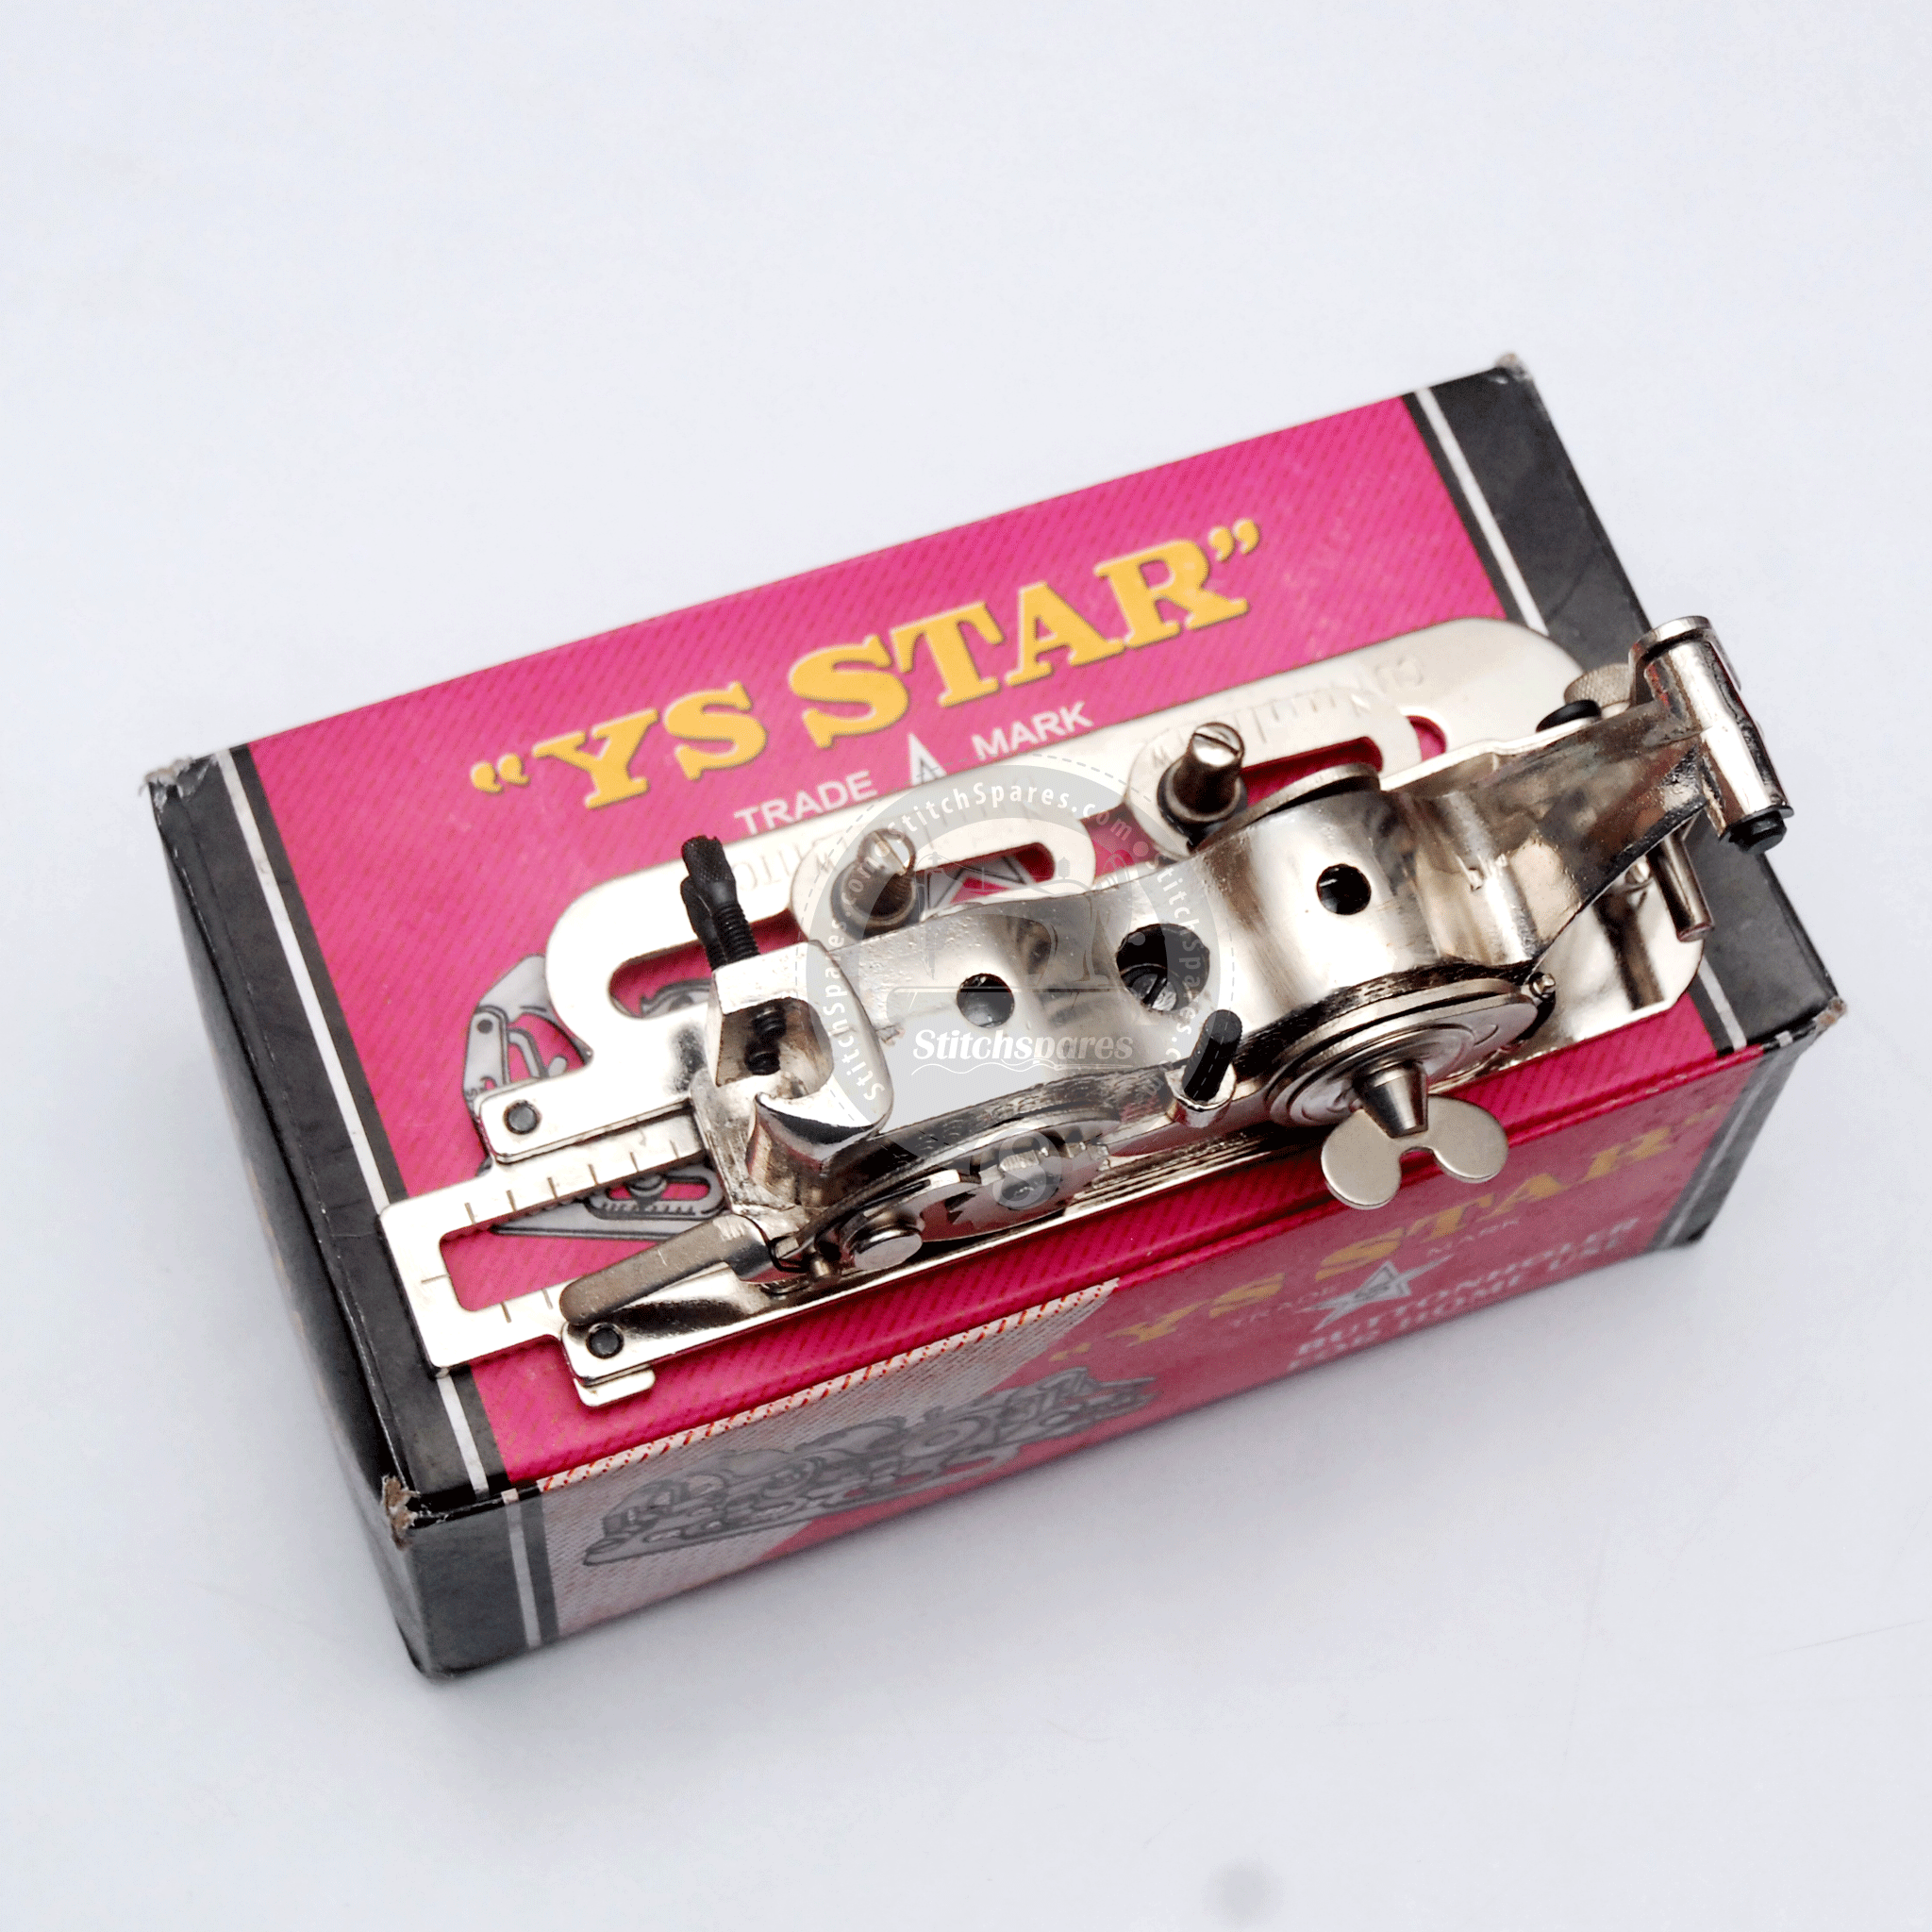 YS-4454 Knopflocher für den Heimgebrauch Nähmaschinenaufsatz